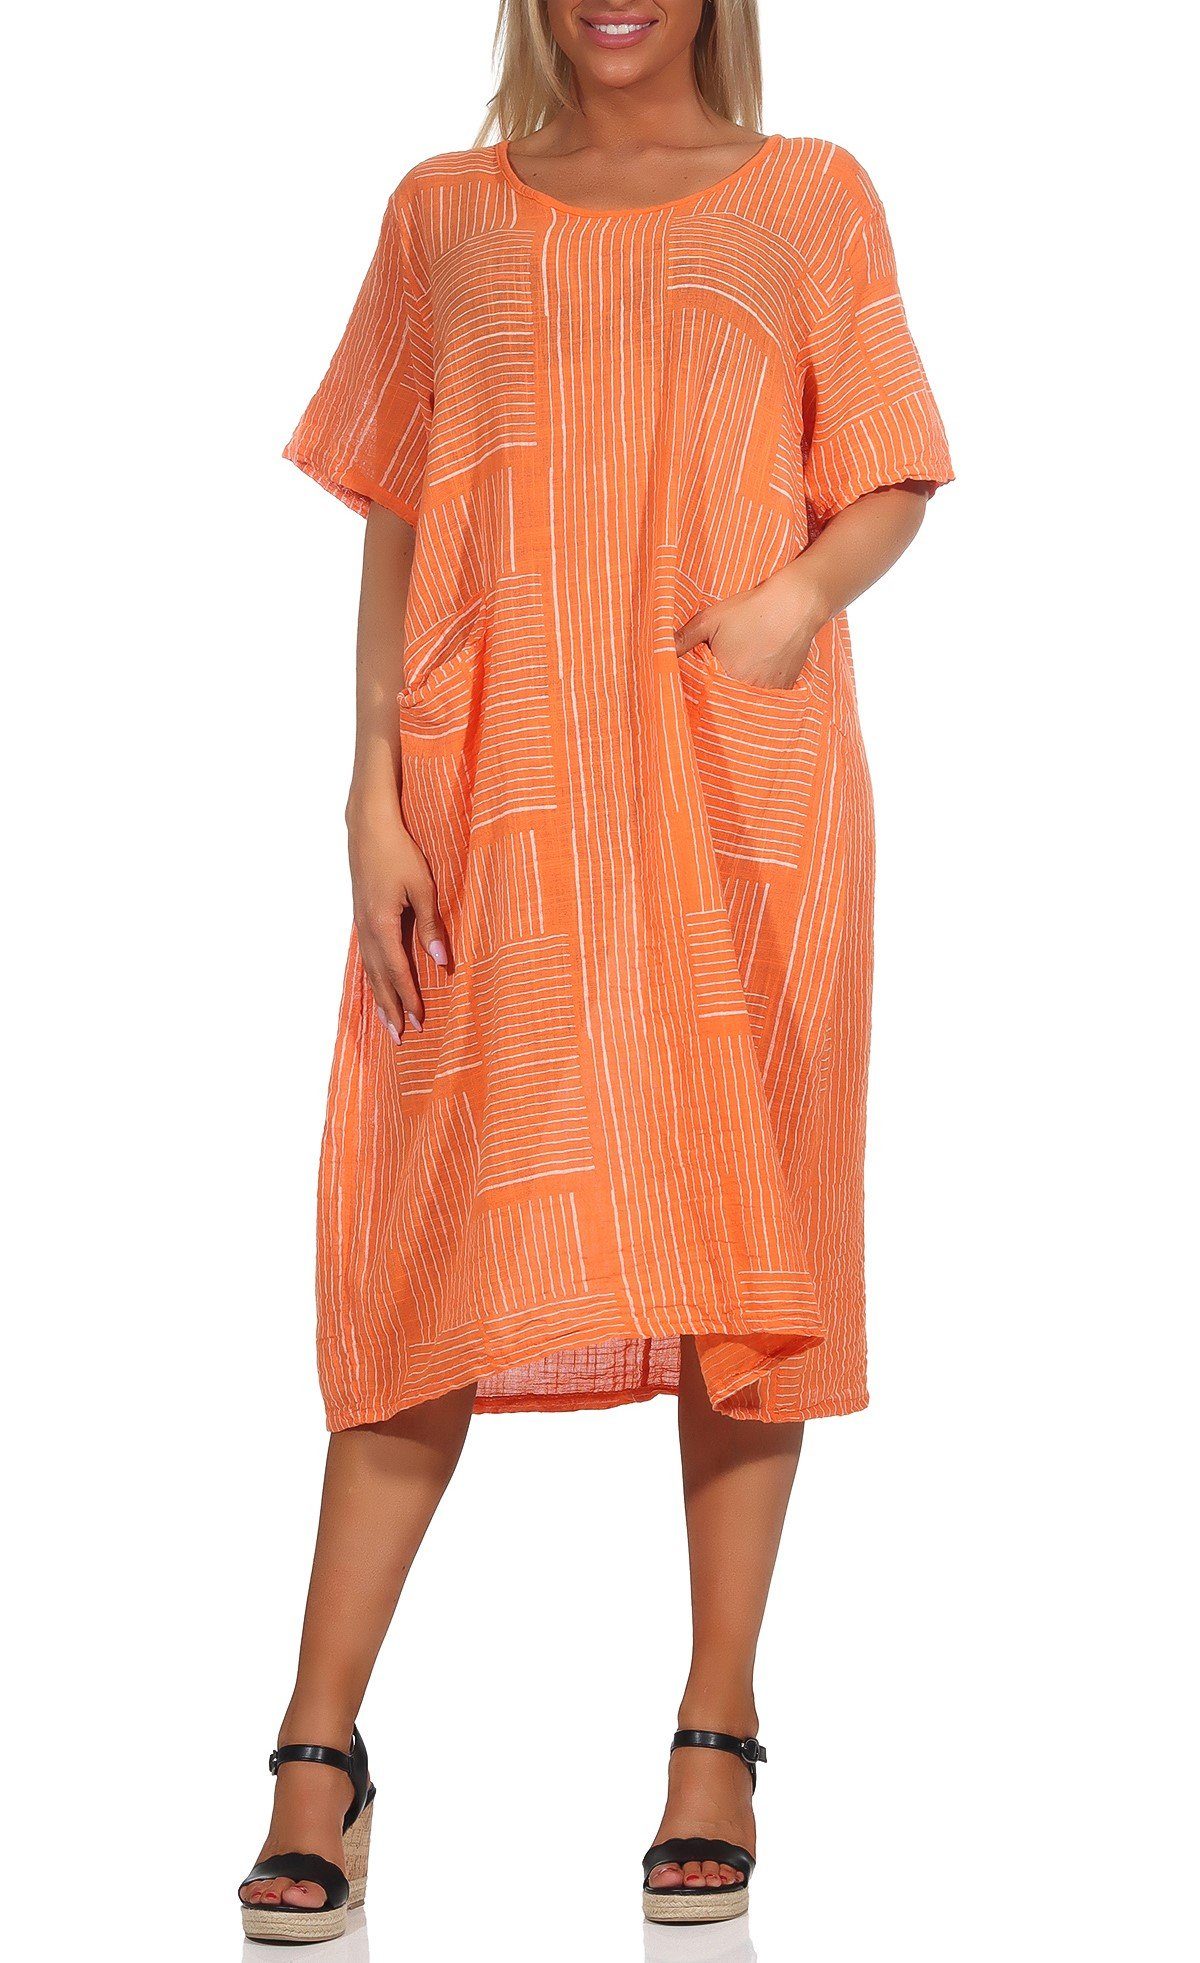 Mississhop Sommerkleid Baumwollkleid 100 % Baumwolle Casual Shirtkleid Strandkleid M.377 Orange